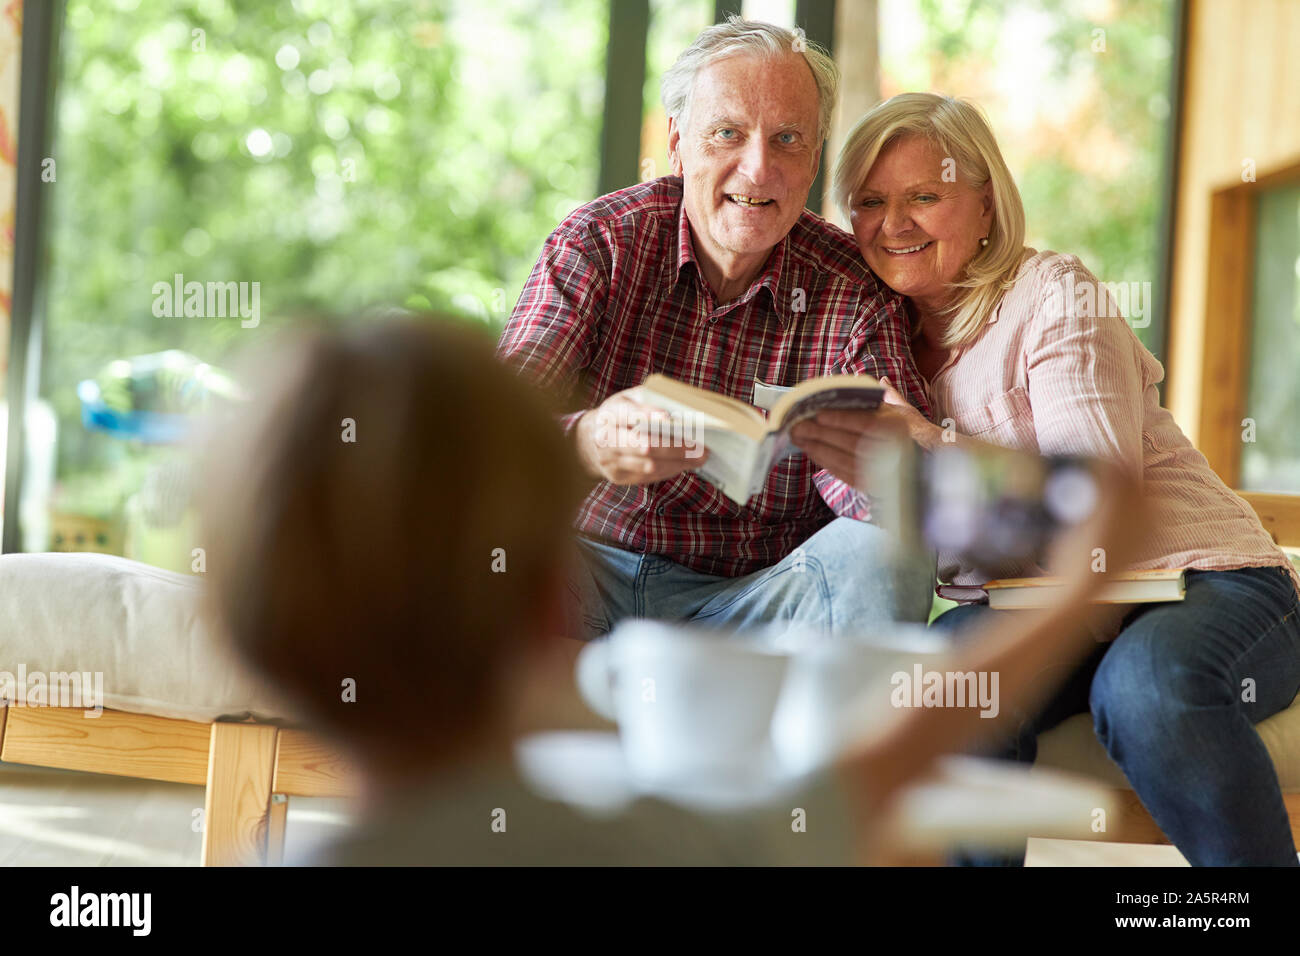 Enkelkind fotografiert seine Großeltern im Wohnzimmer als Erinnerung Stockfoto